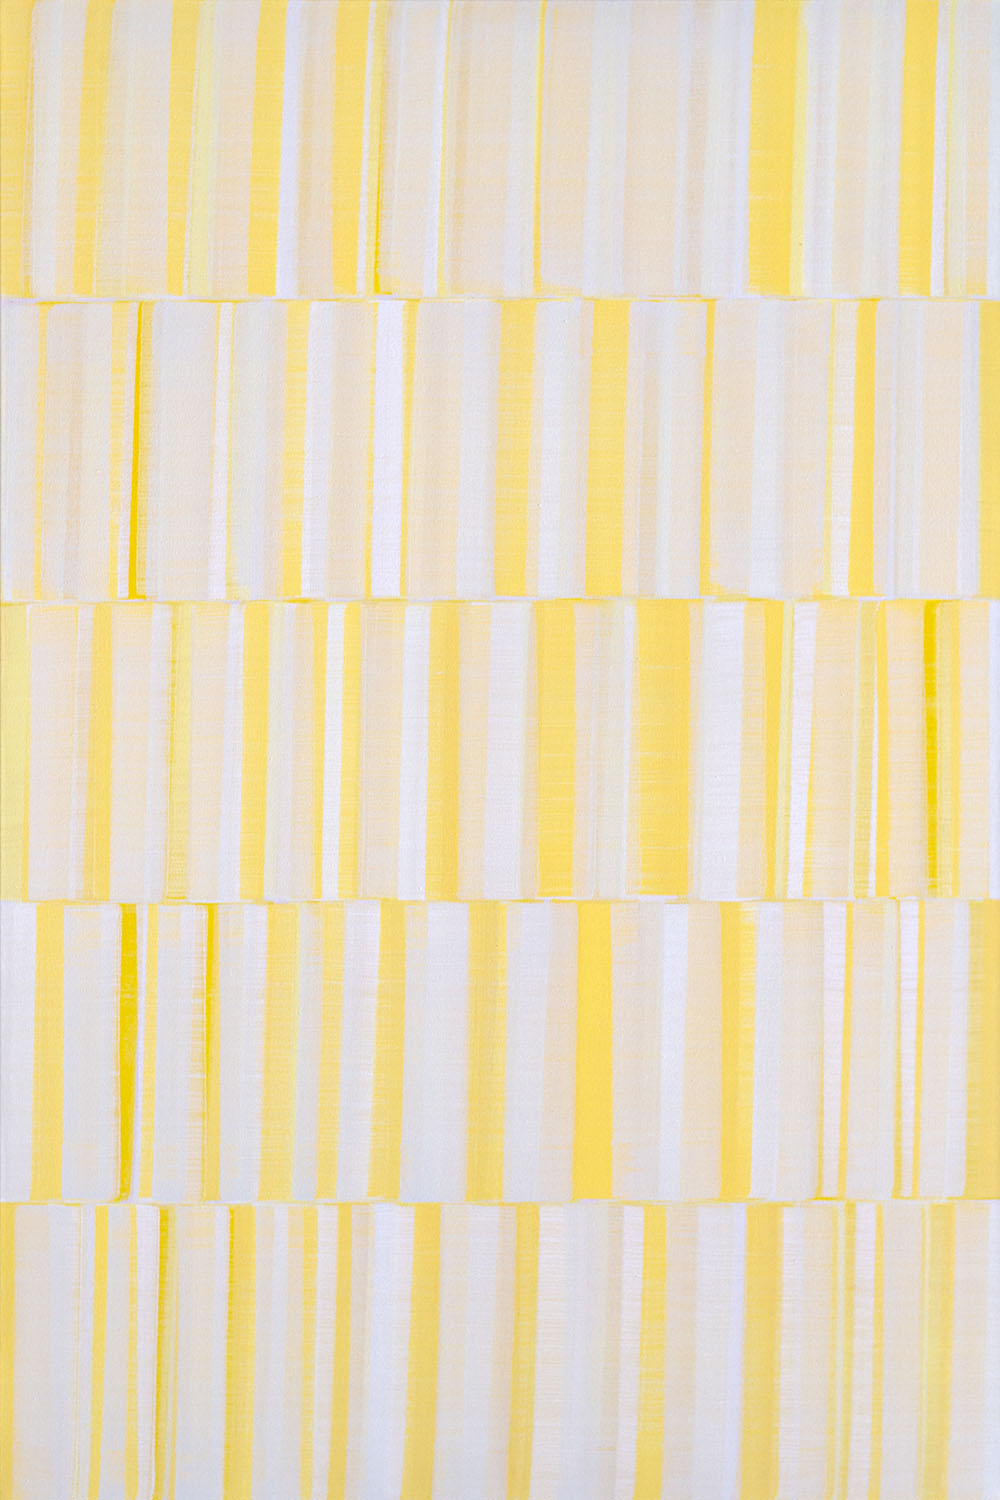 Nikola Dimitrov, FarbraumGelb II, 2019, Pigmente, Bindemittel auf Leinwand, 150 × 100 cm